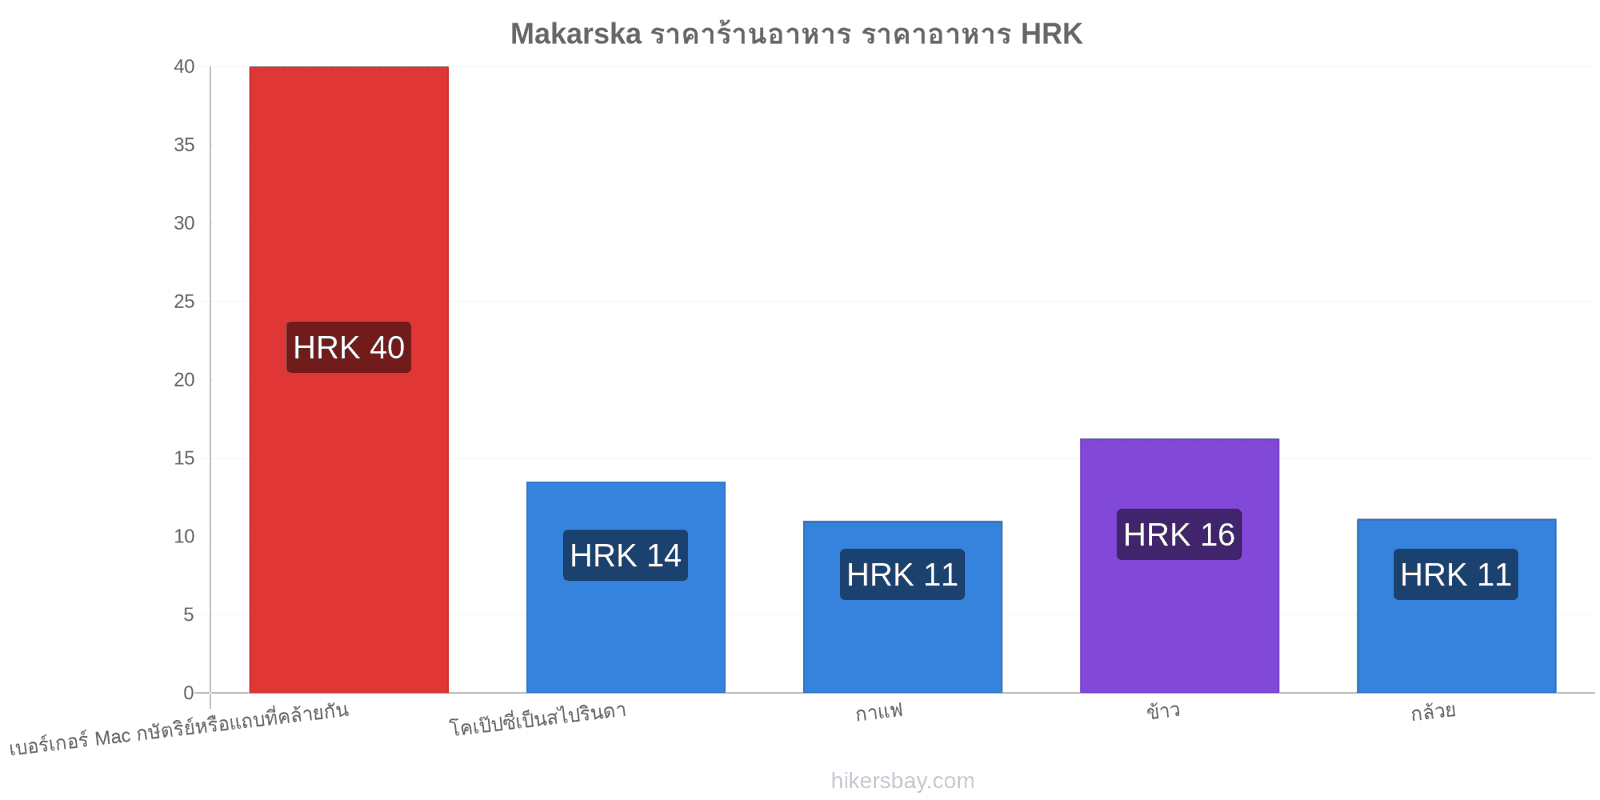 Makarska การเปลี่ยนแปลงราคา hikersbay.com